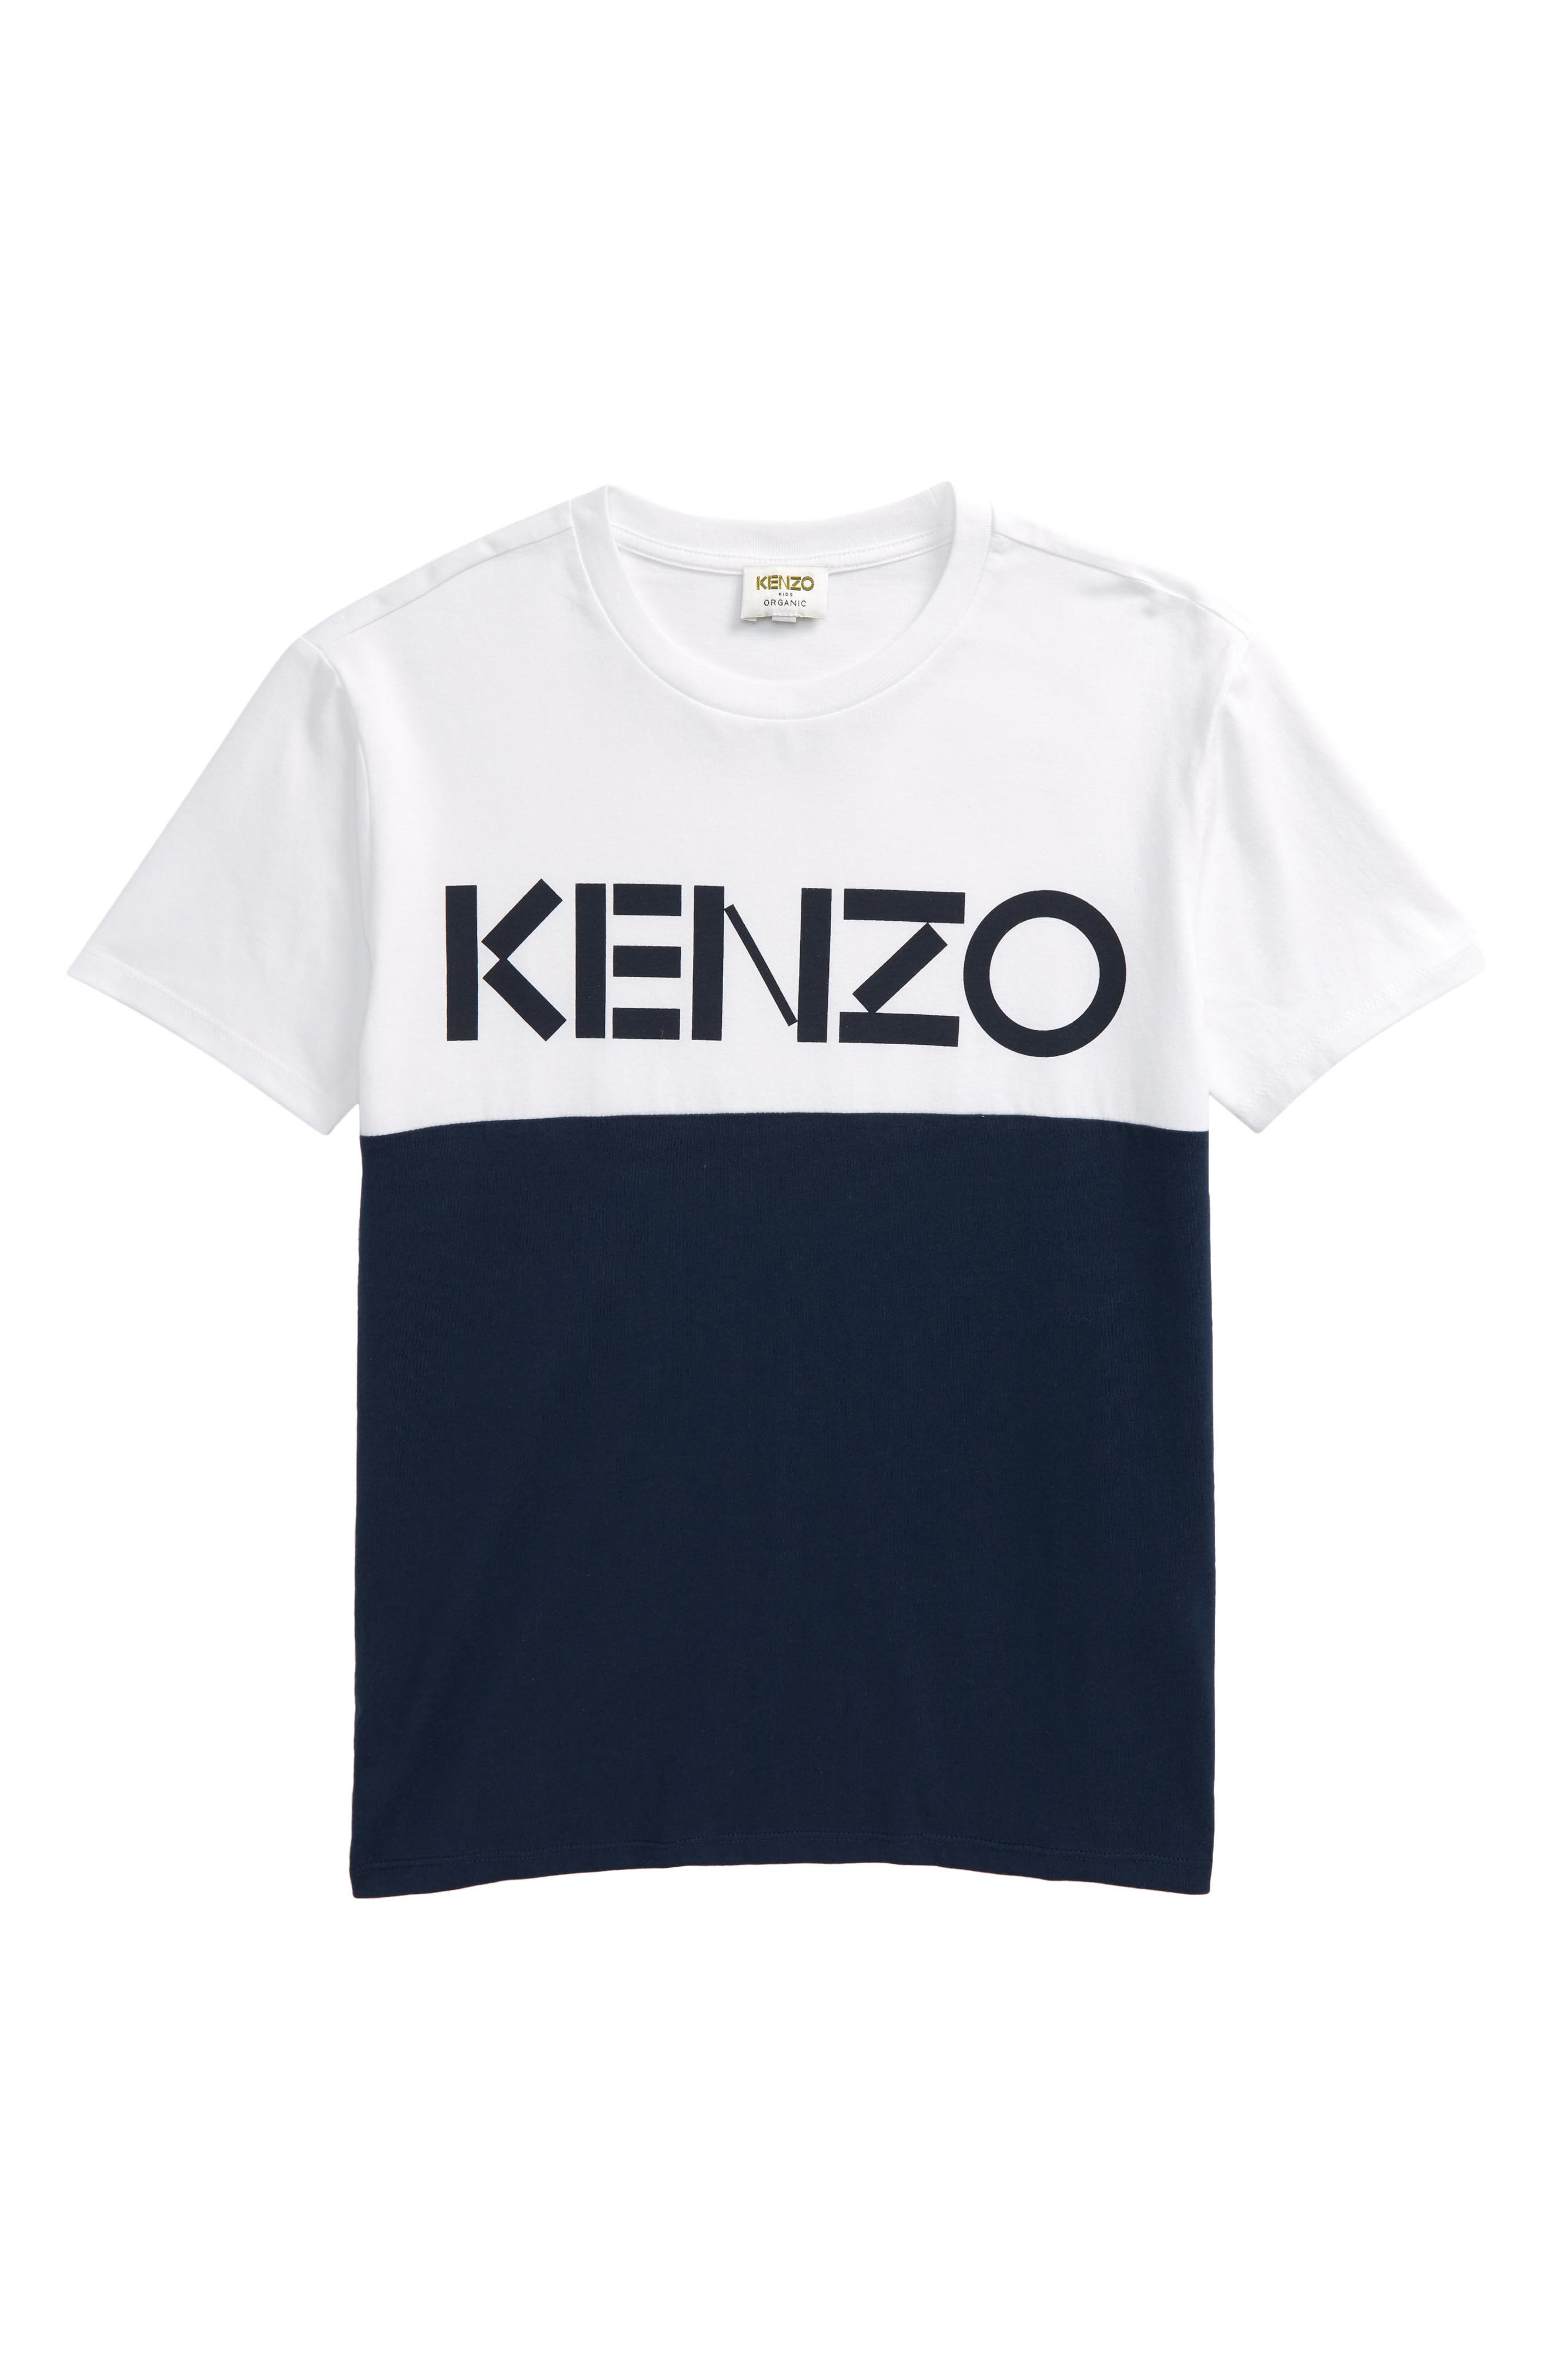 toddler boy kenzo shirt